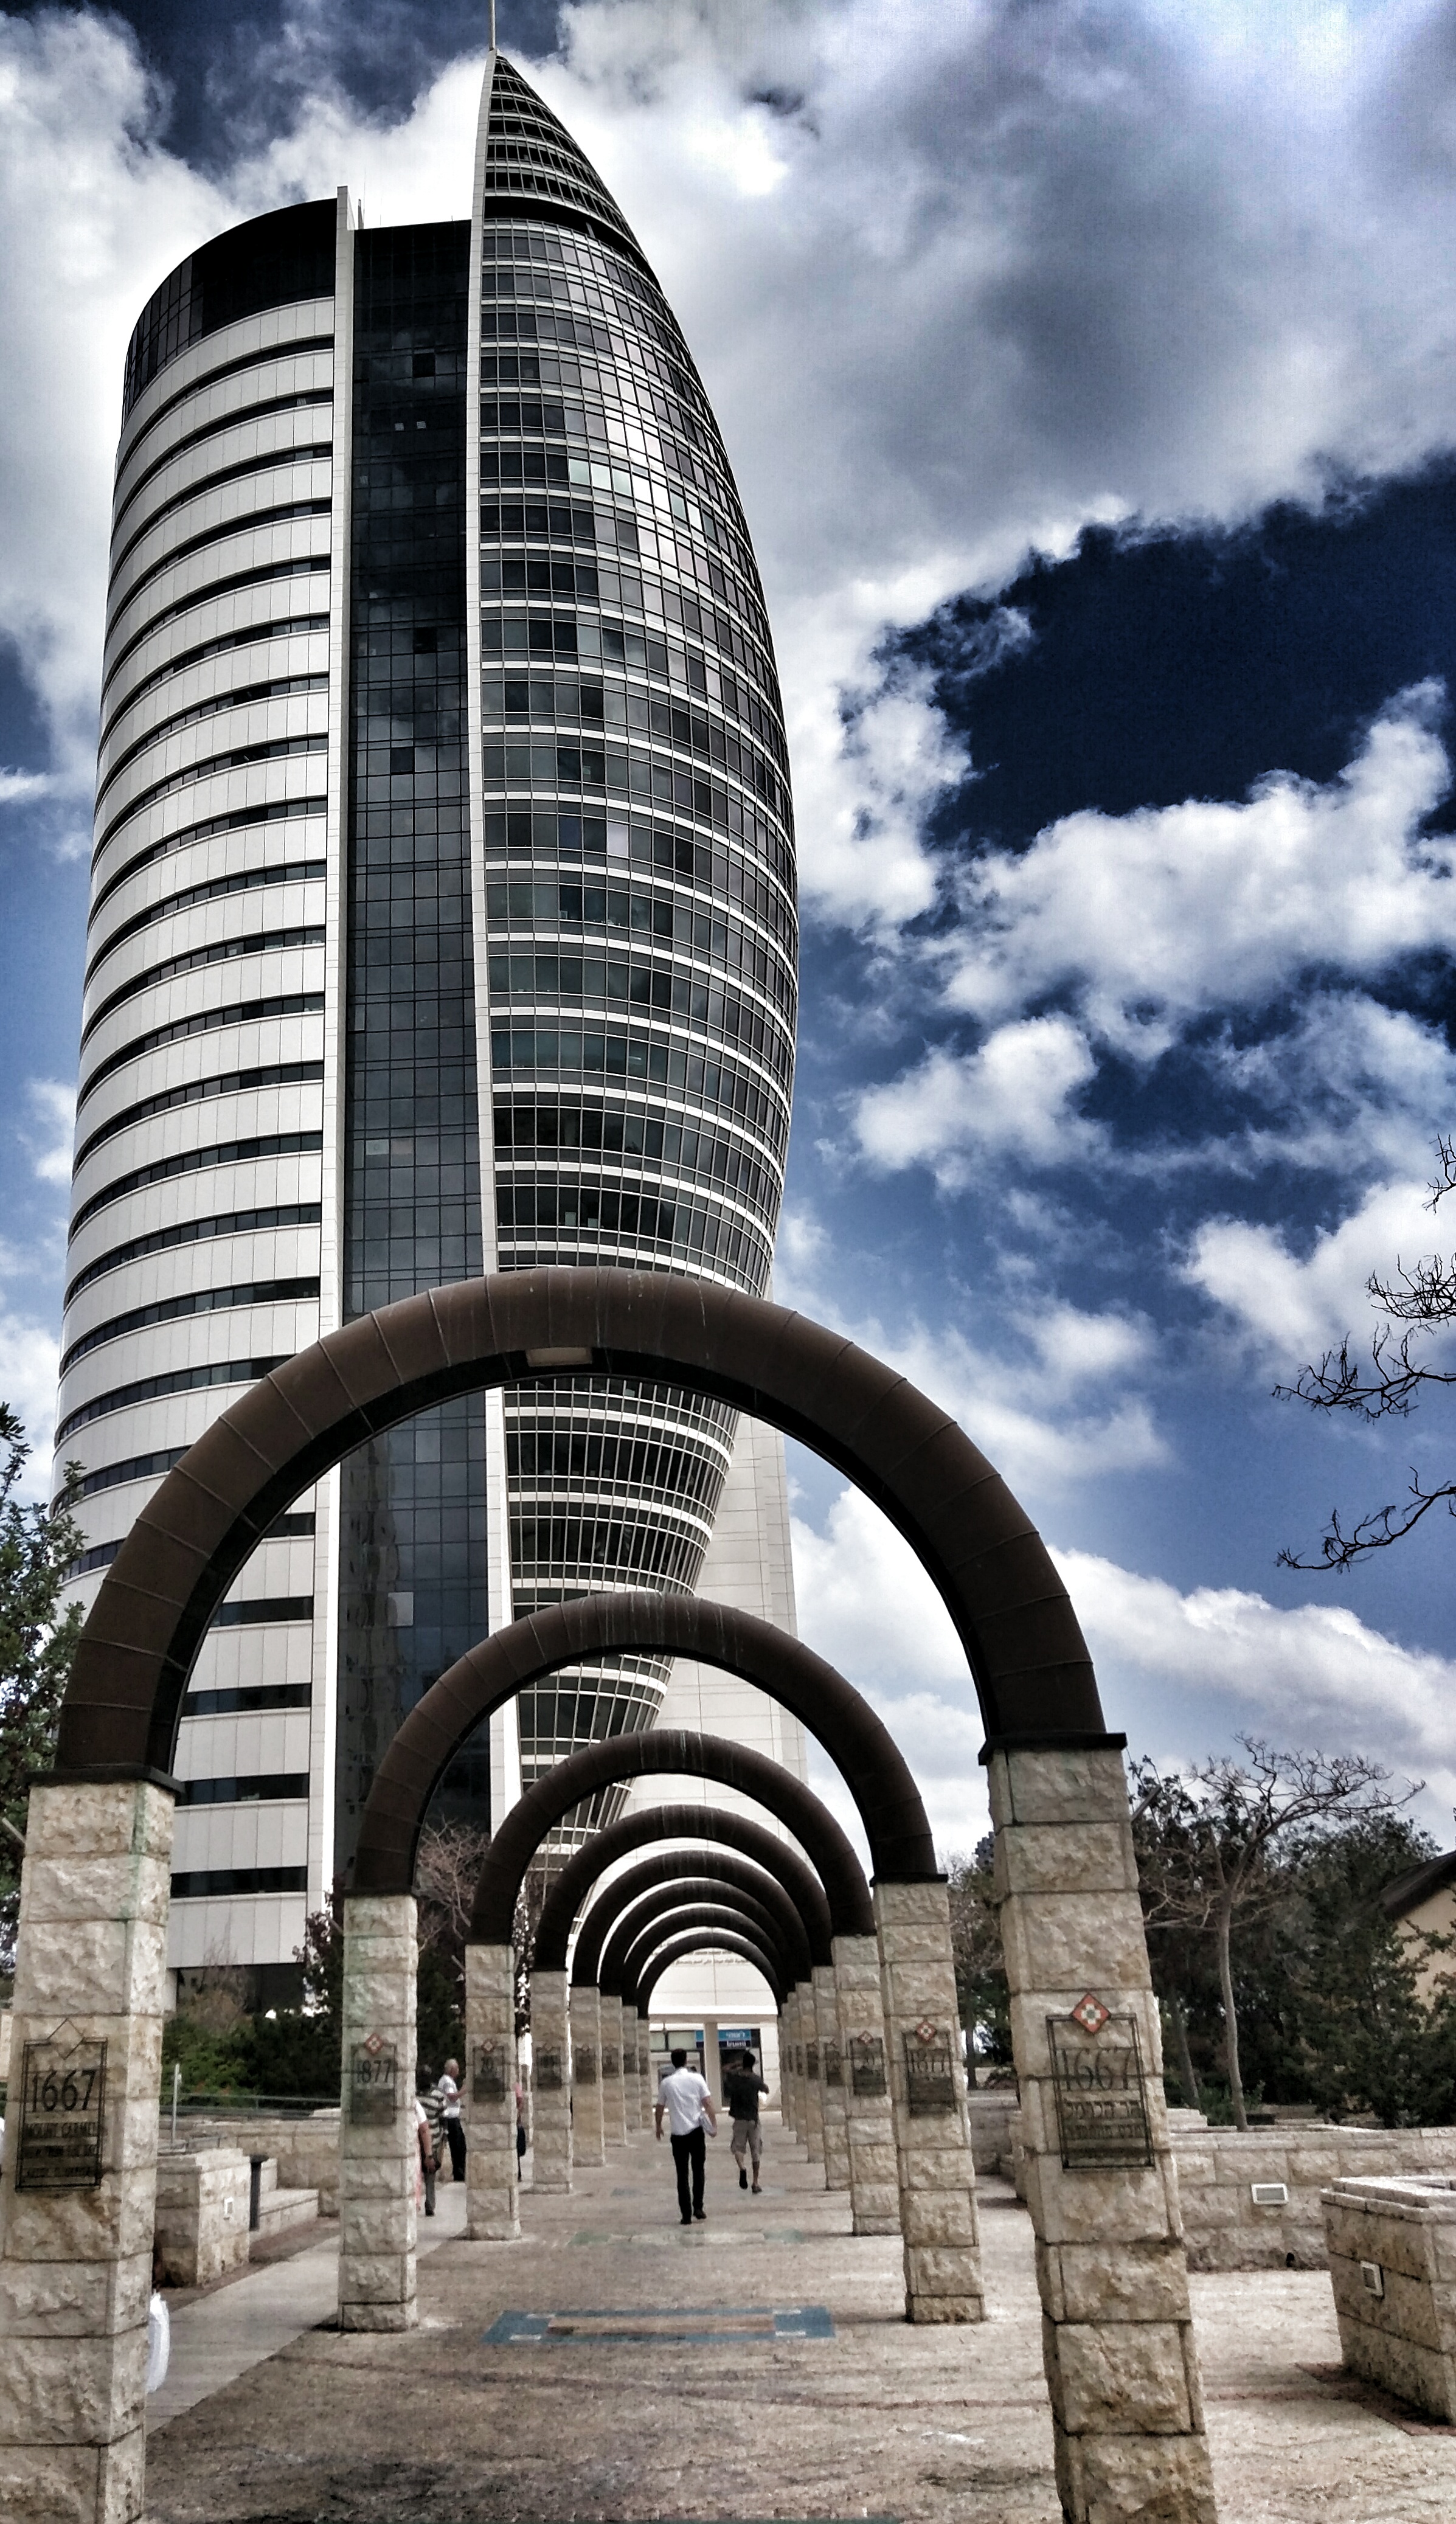 Kafkaesque: The Sail Tower, Haifa